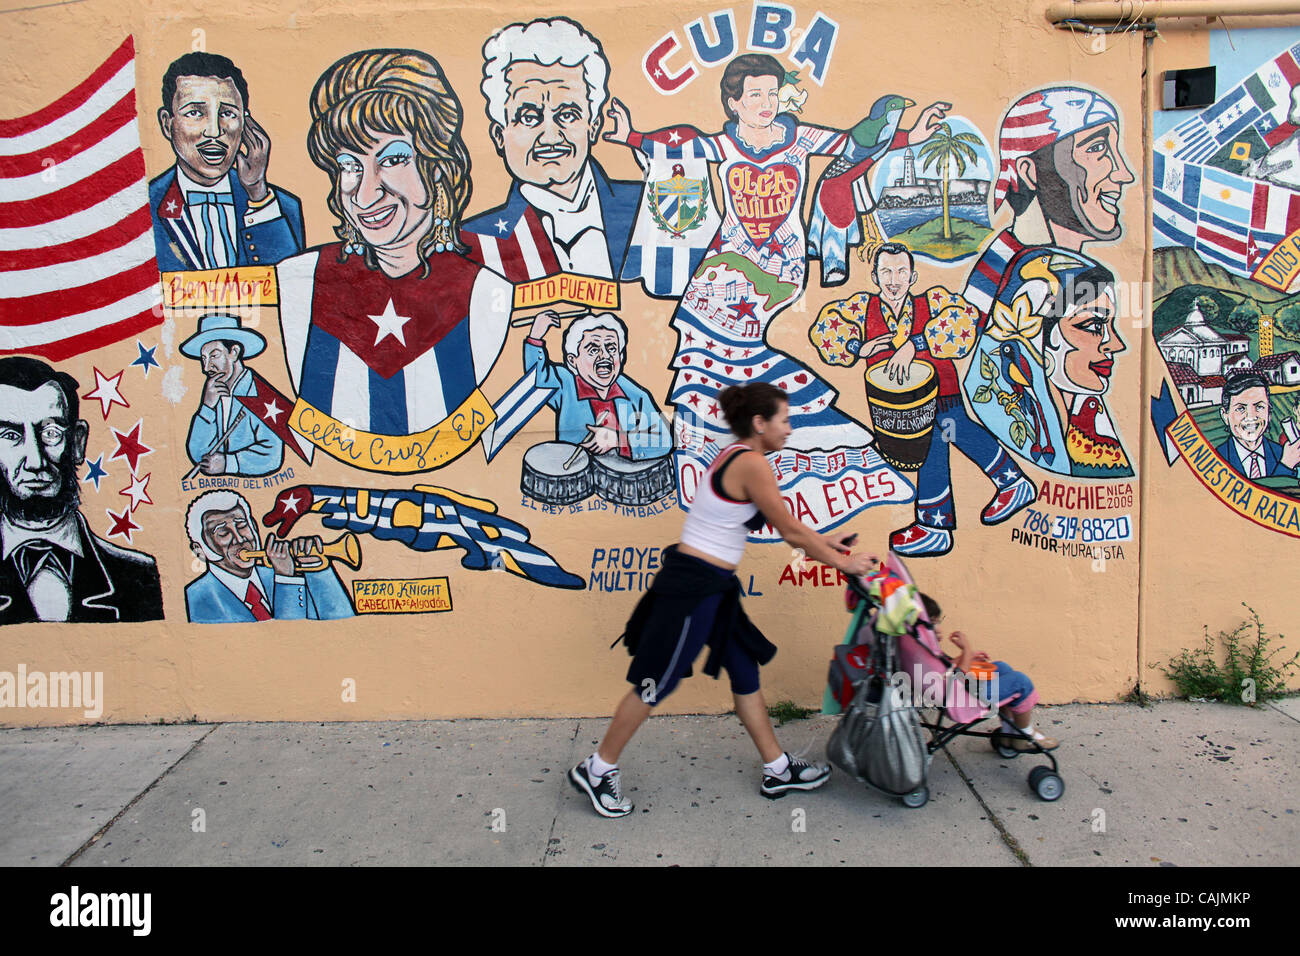 Jan 11, 2011 - Miami, Floride, États-Unis - Colorful wall graffiti murale dans la communauté de l'influence de Cuba la petite havane. Little Havana (La Pequena Habana) est un quartier au sein de la ville de Miami. La maison à beaucoup de résidents immigrés cubains. Little Havana est noté comme un centre de développement social, culturel, et poli Banque D'Images